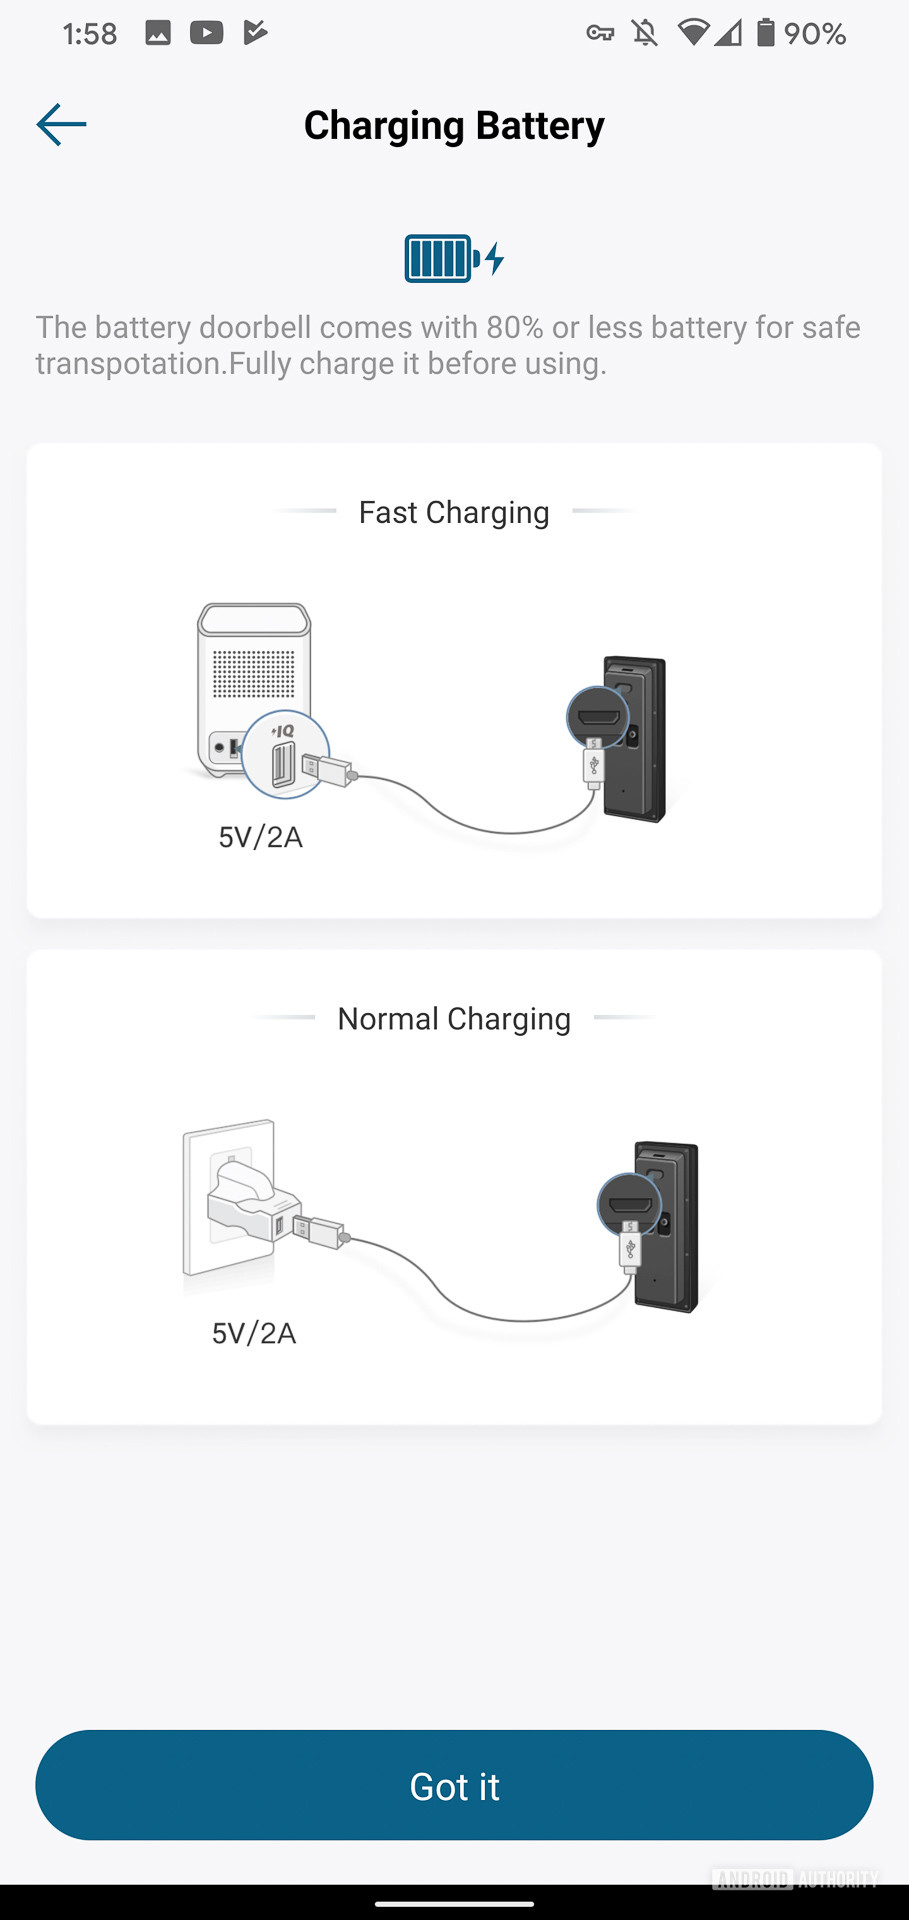 Eufy Video Doorbell charging battery